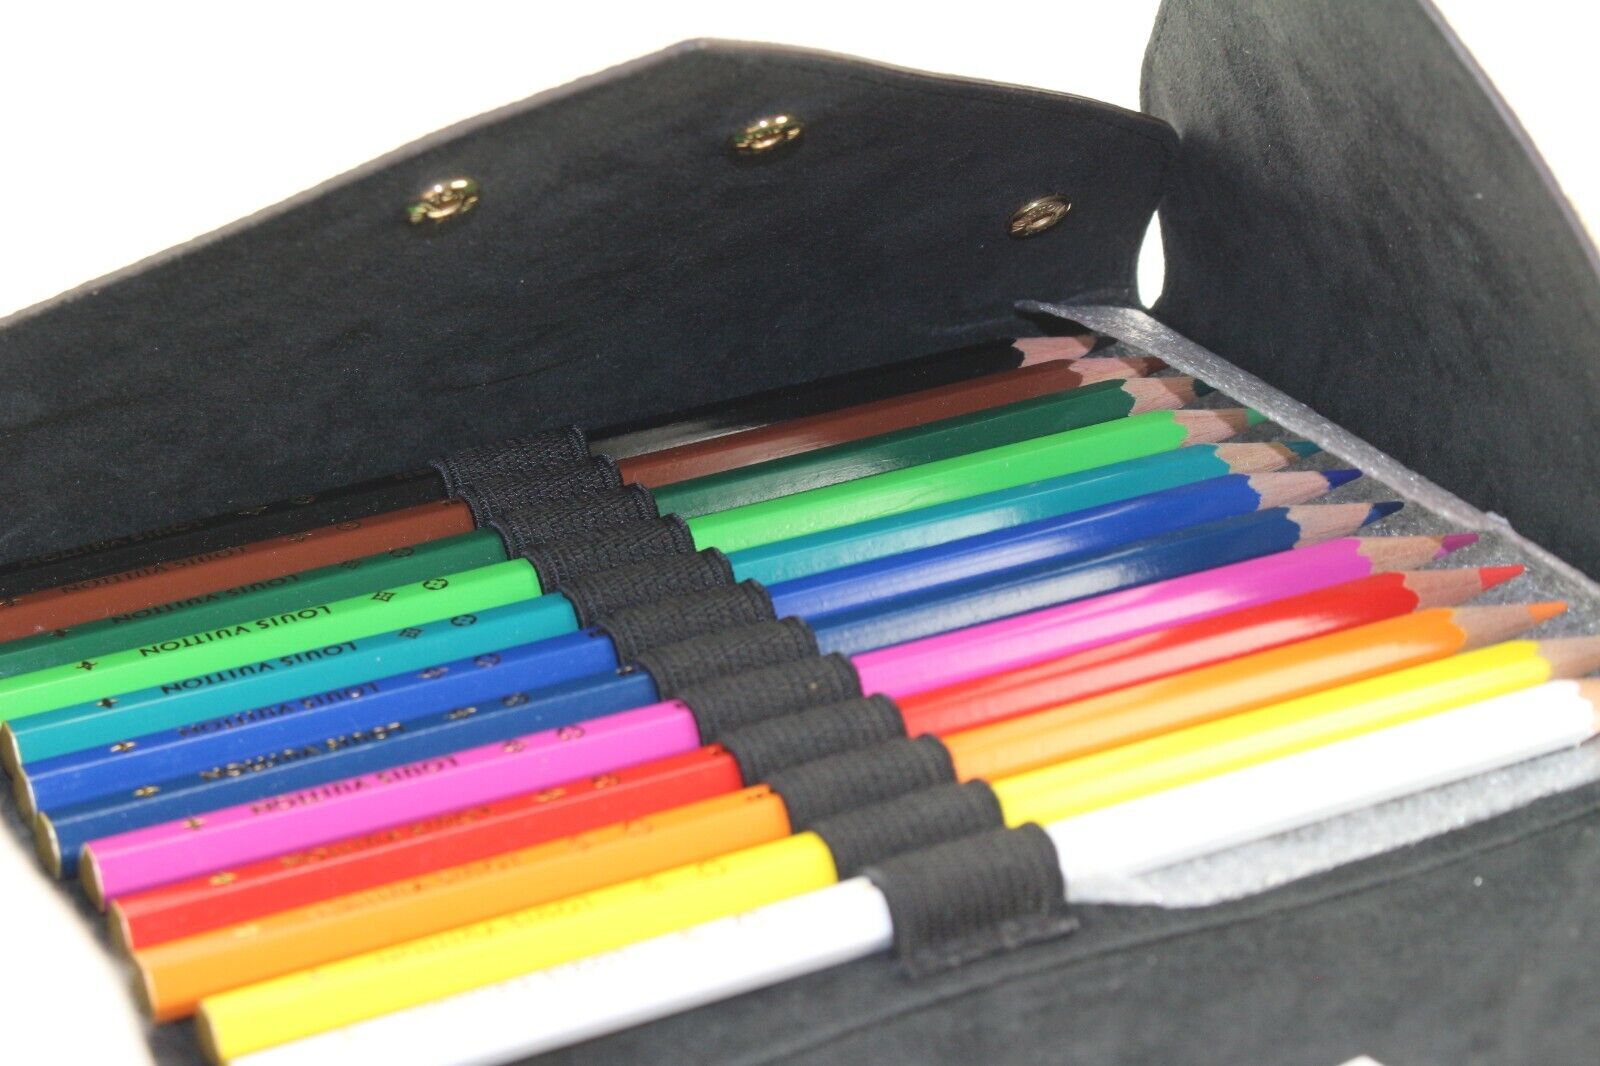 Louis Vuitton Colored Pencils